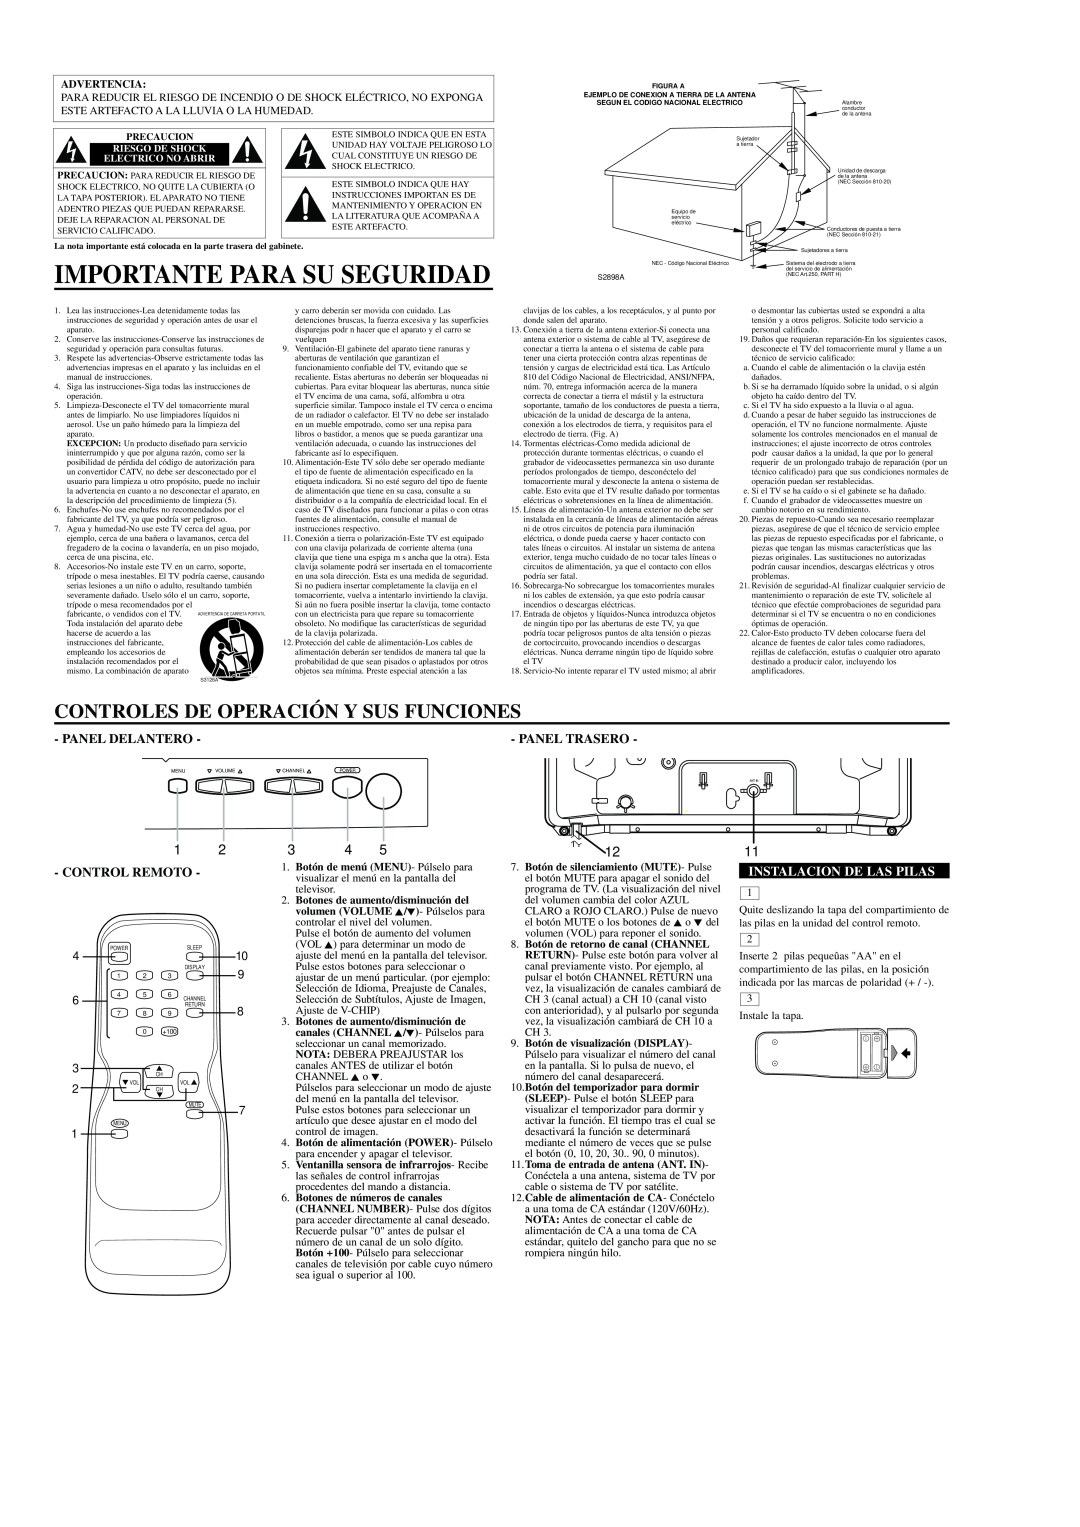 Emerson EWT1931 owner manual Importante Para Su Seguridad, Panel Trasero, Instalacion De Las Pilas, Advertencia 